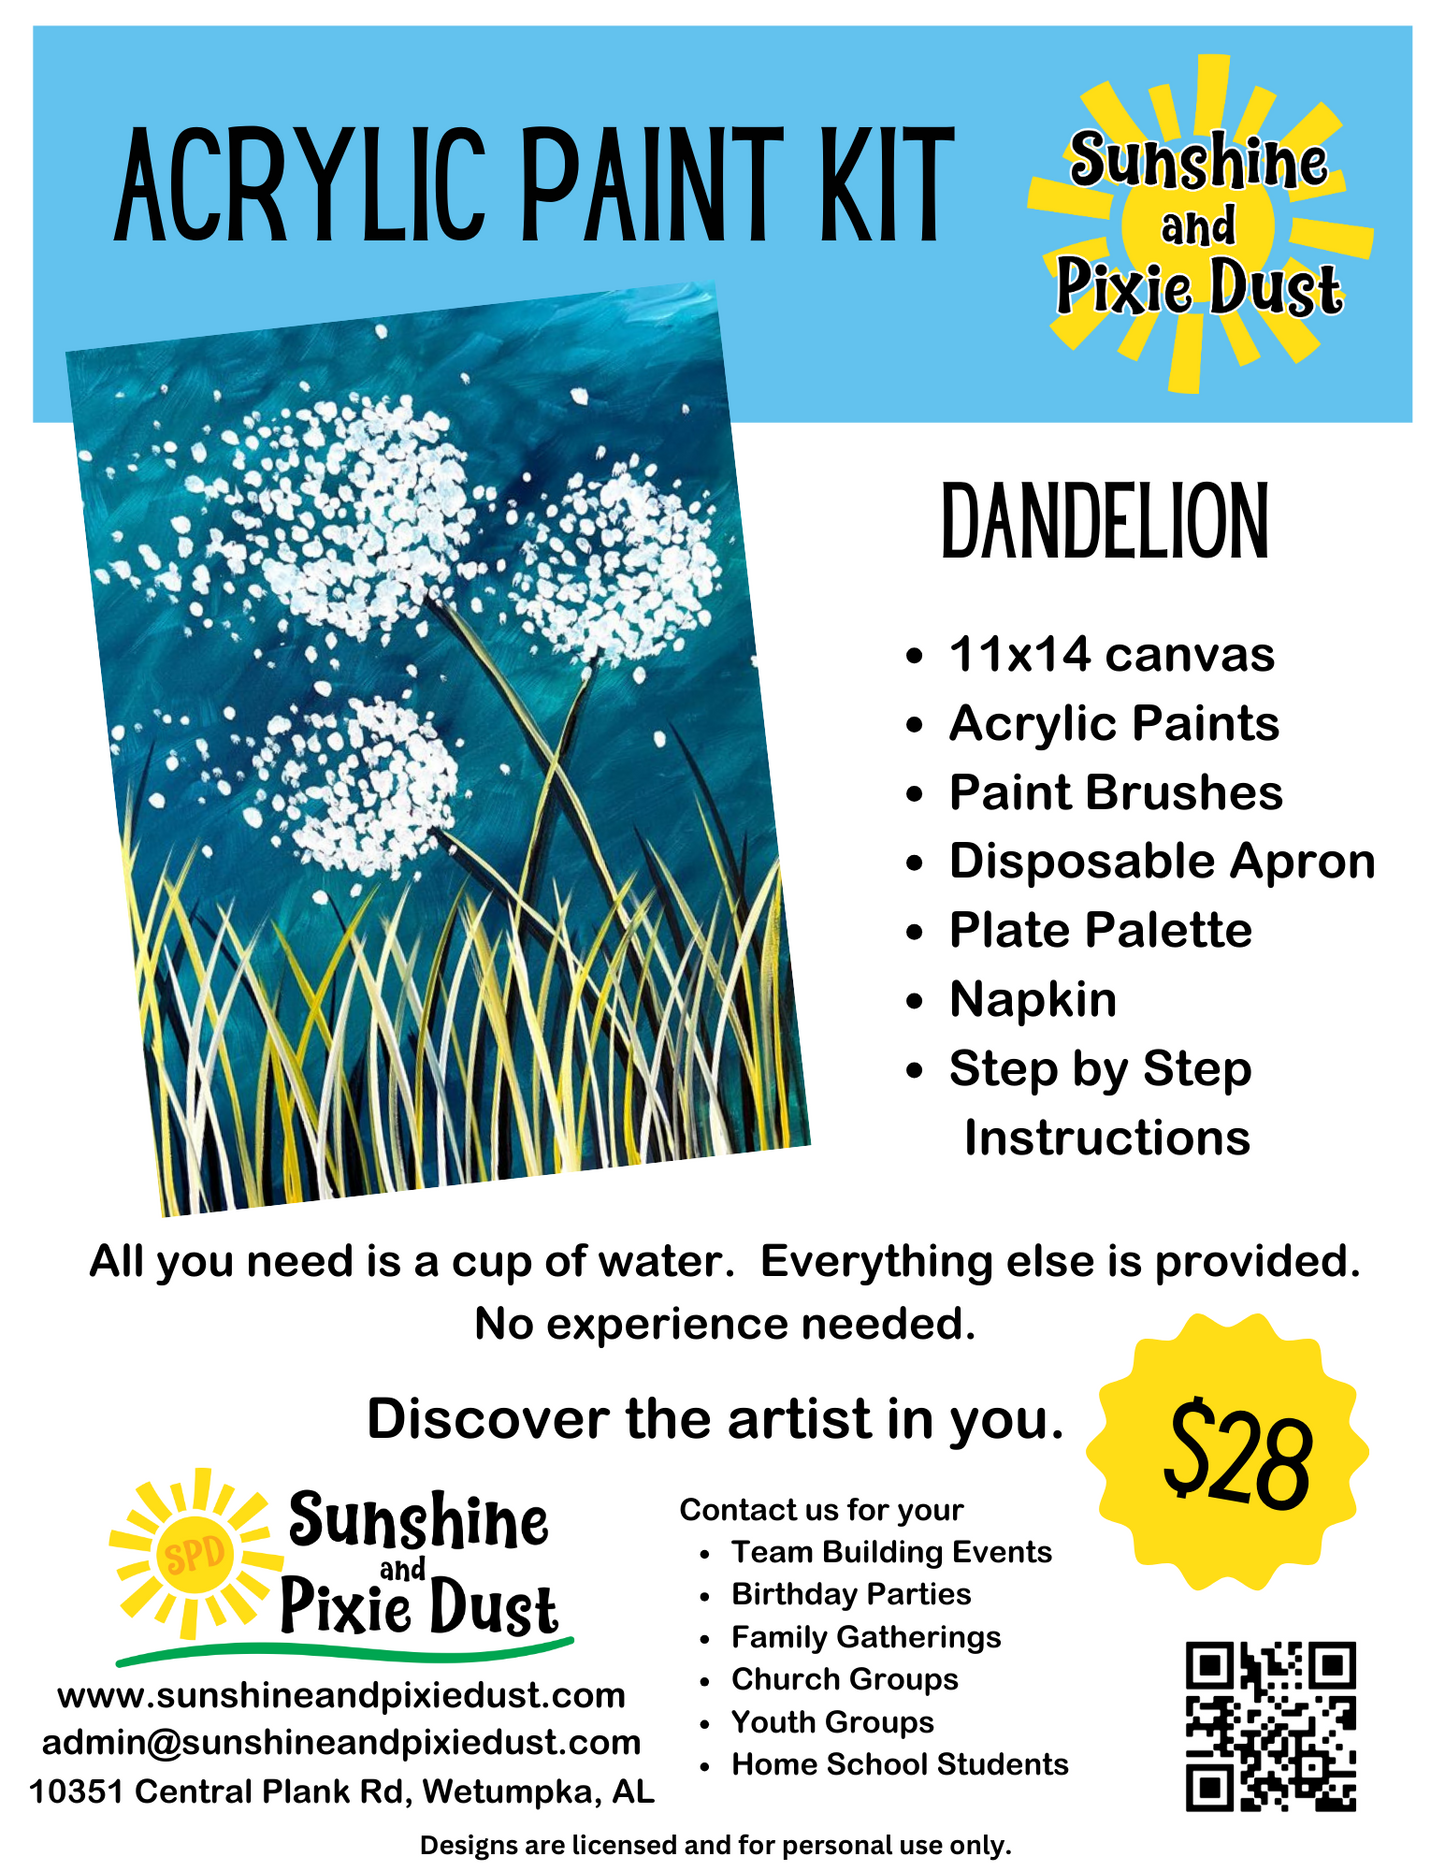 Dandelion Acrylic Paint Kit